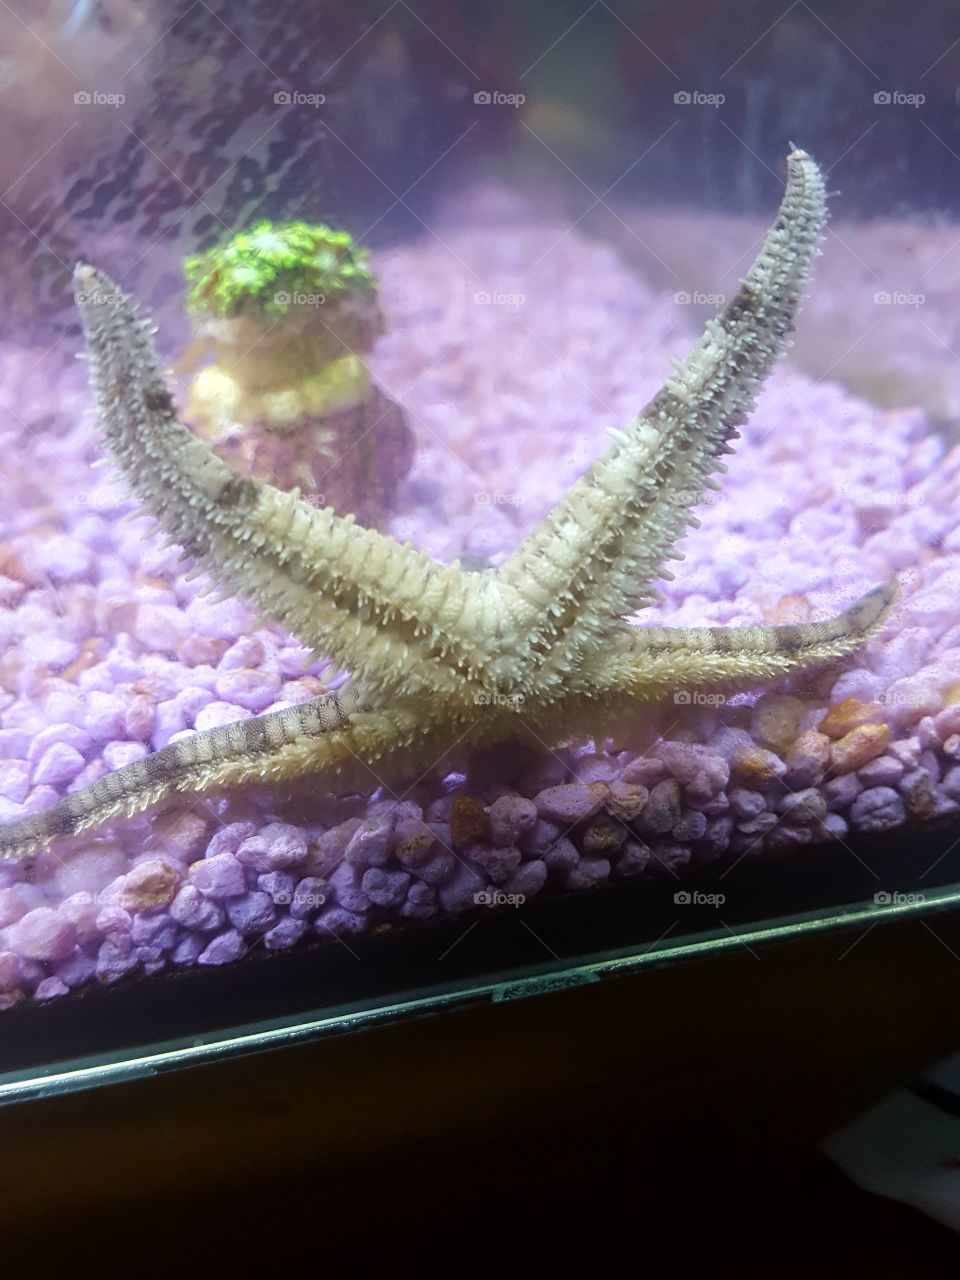 star fish says hi